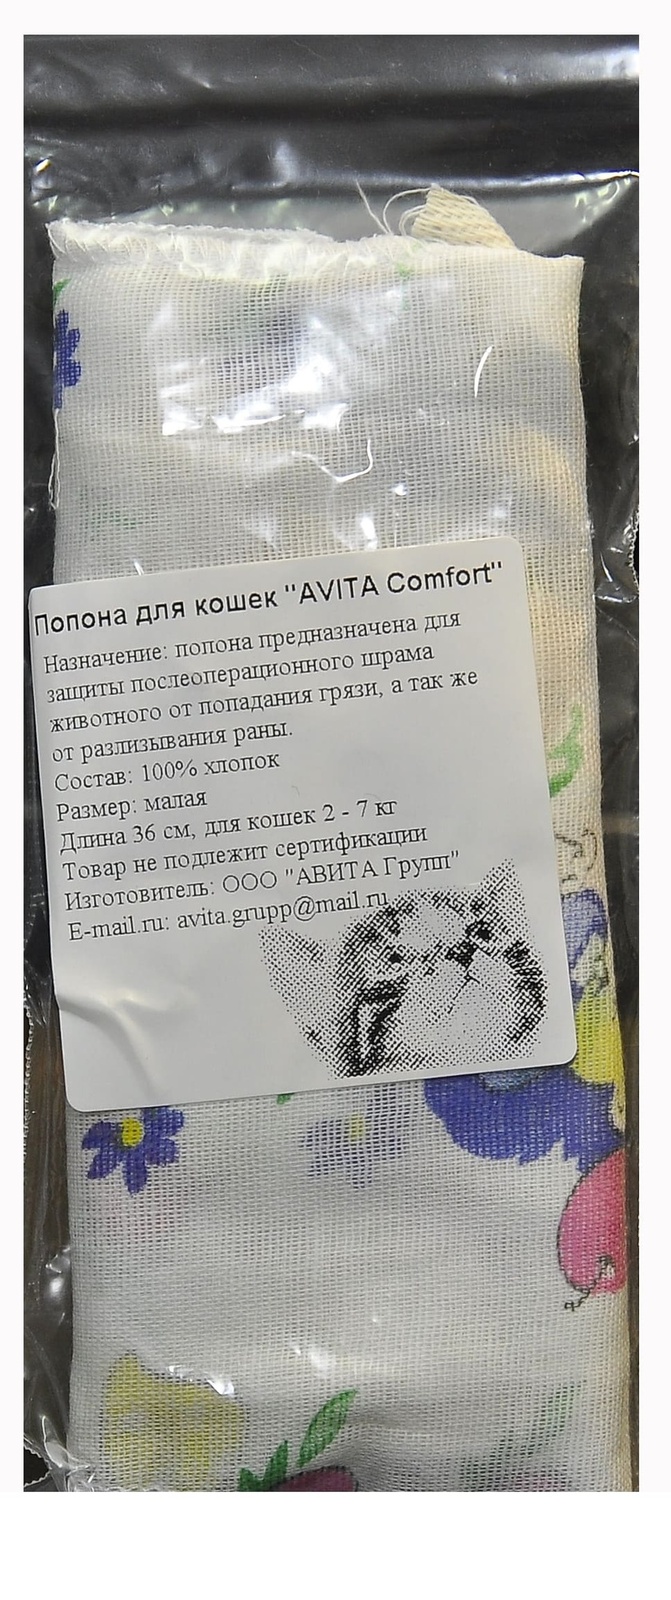 Авита-групп Авита-групп попонка послеоперационная для кошек (ситец) (100 г)